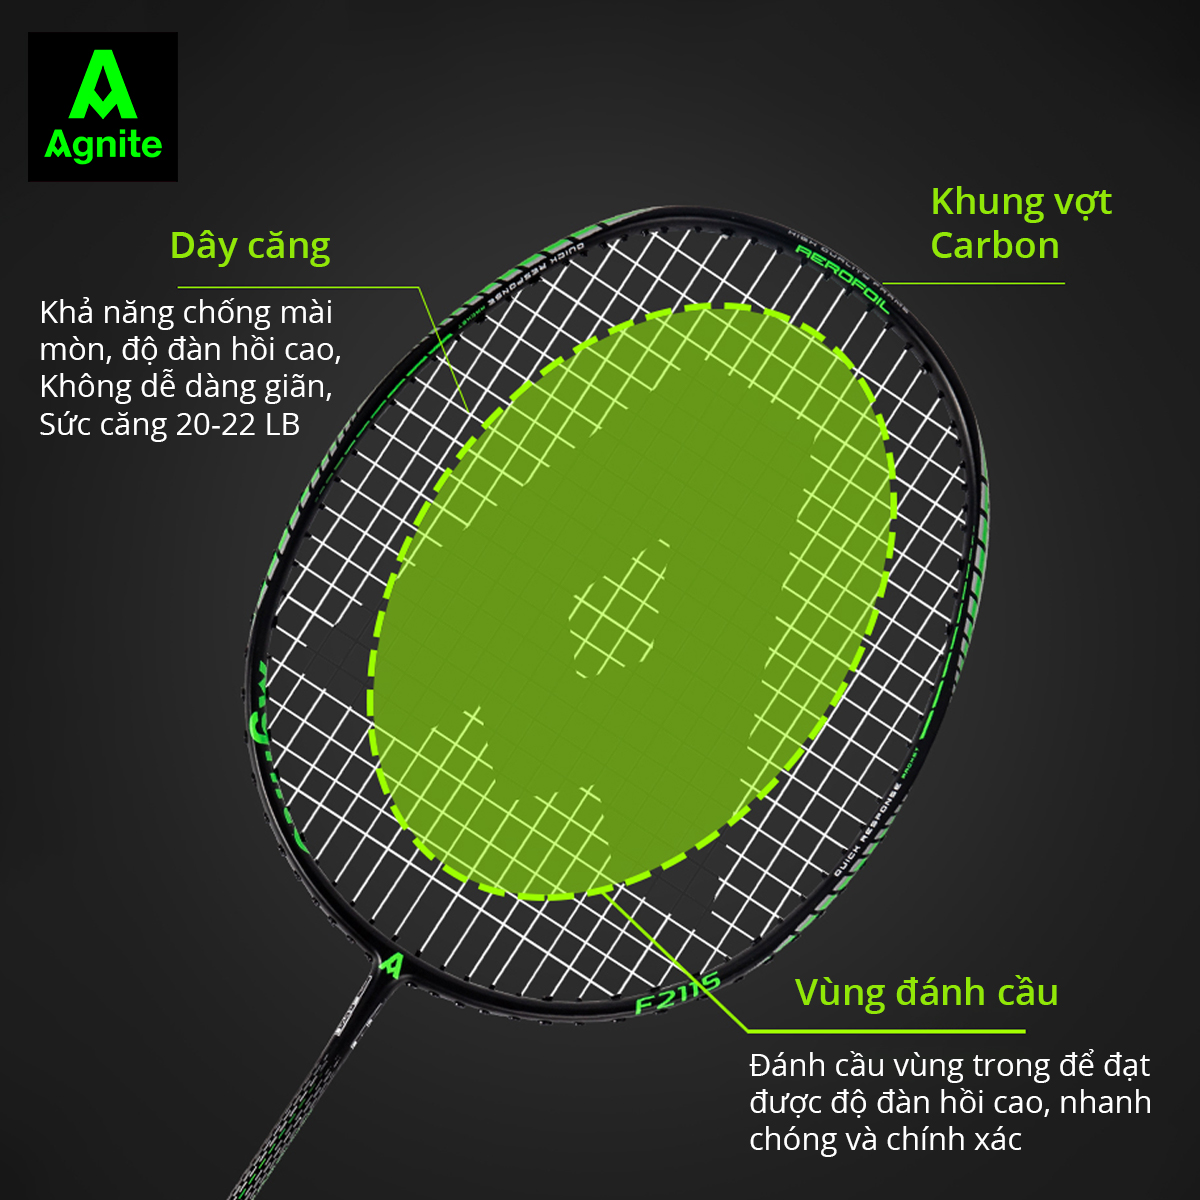 1 chiếc vợt cầu lông cao cấp Agnite chính hãng - khung carbon siêu bền, nhẹ, đẹp - tặng kèm túi đựng, căng sẵn dây